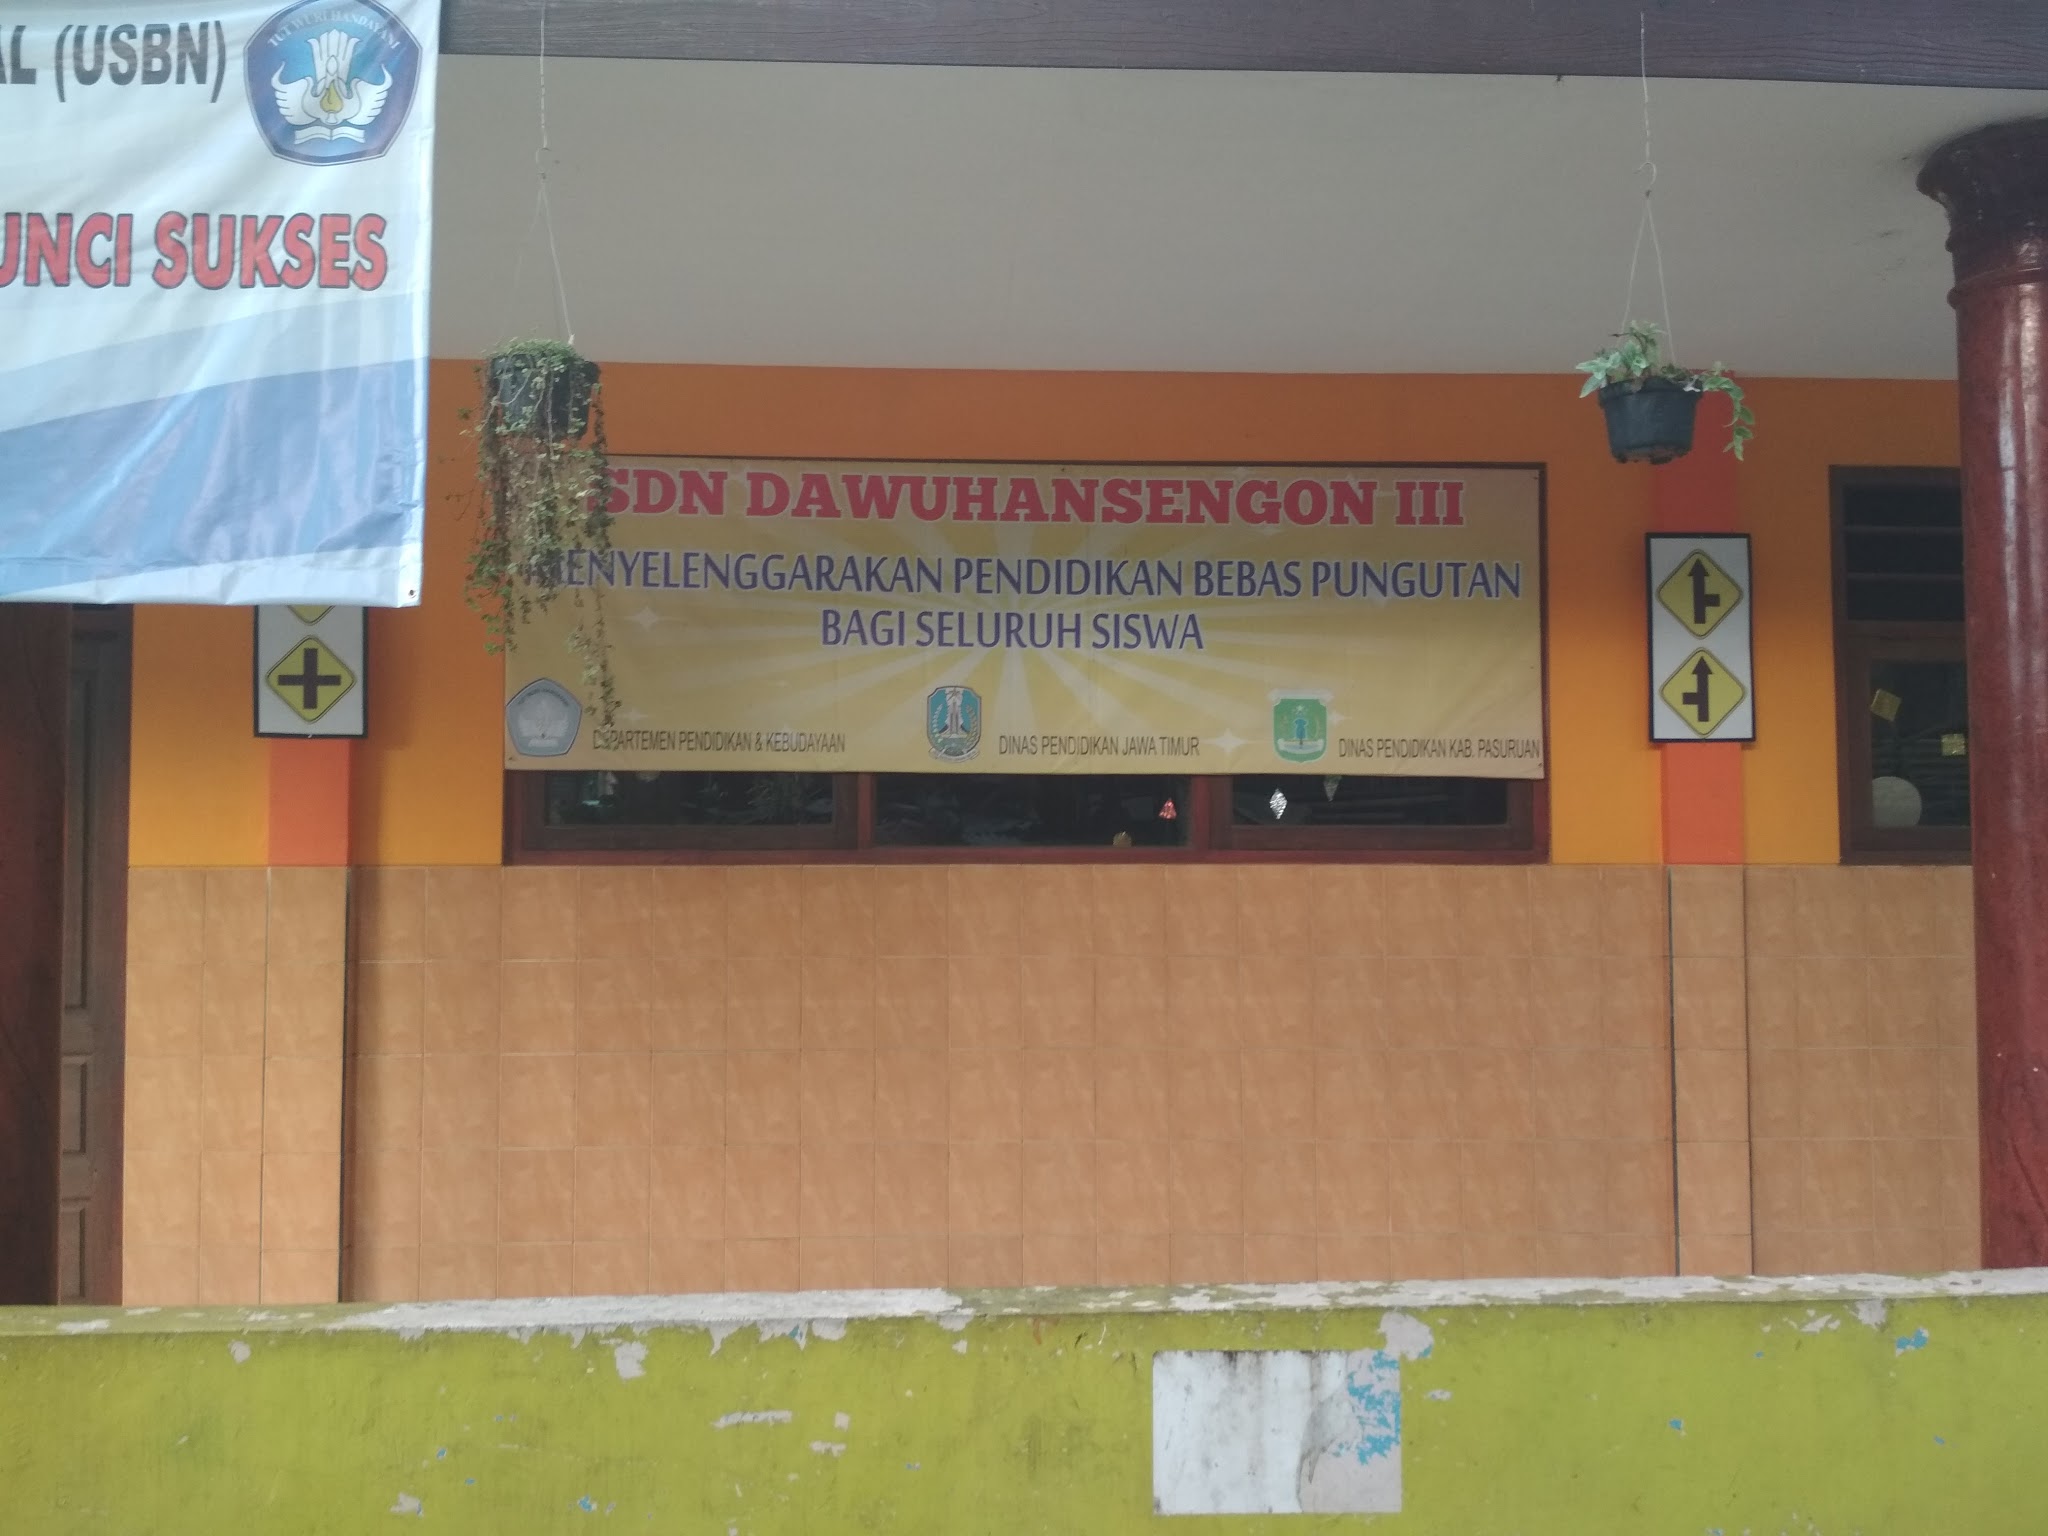 Foto UPT  Satuan Pendidikan SDN Dawuhan Sengon III Purwodadi, Kab. Pasuruan